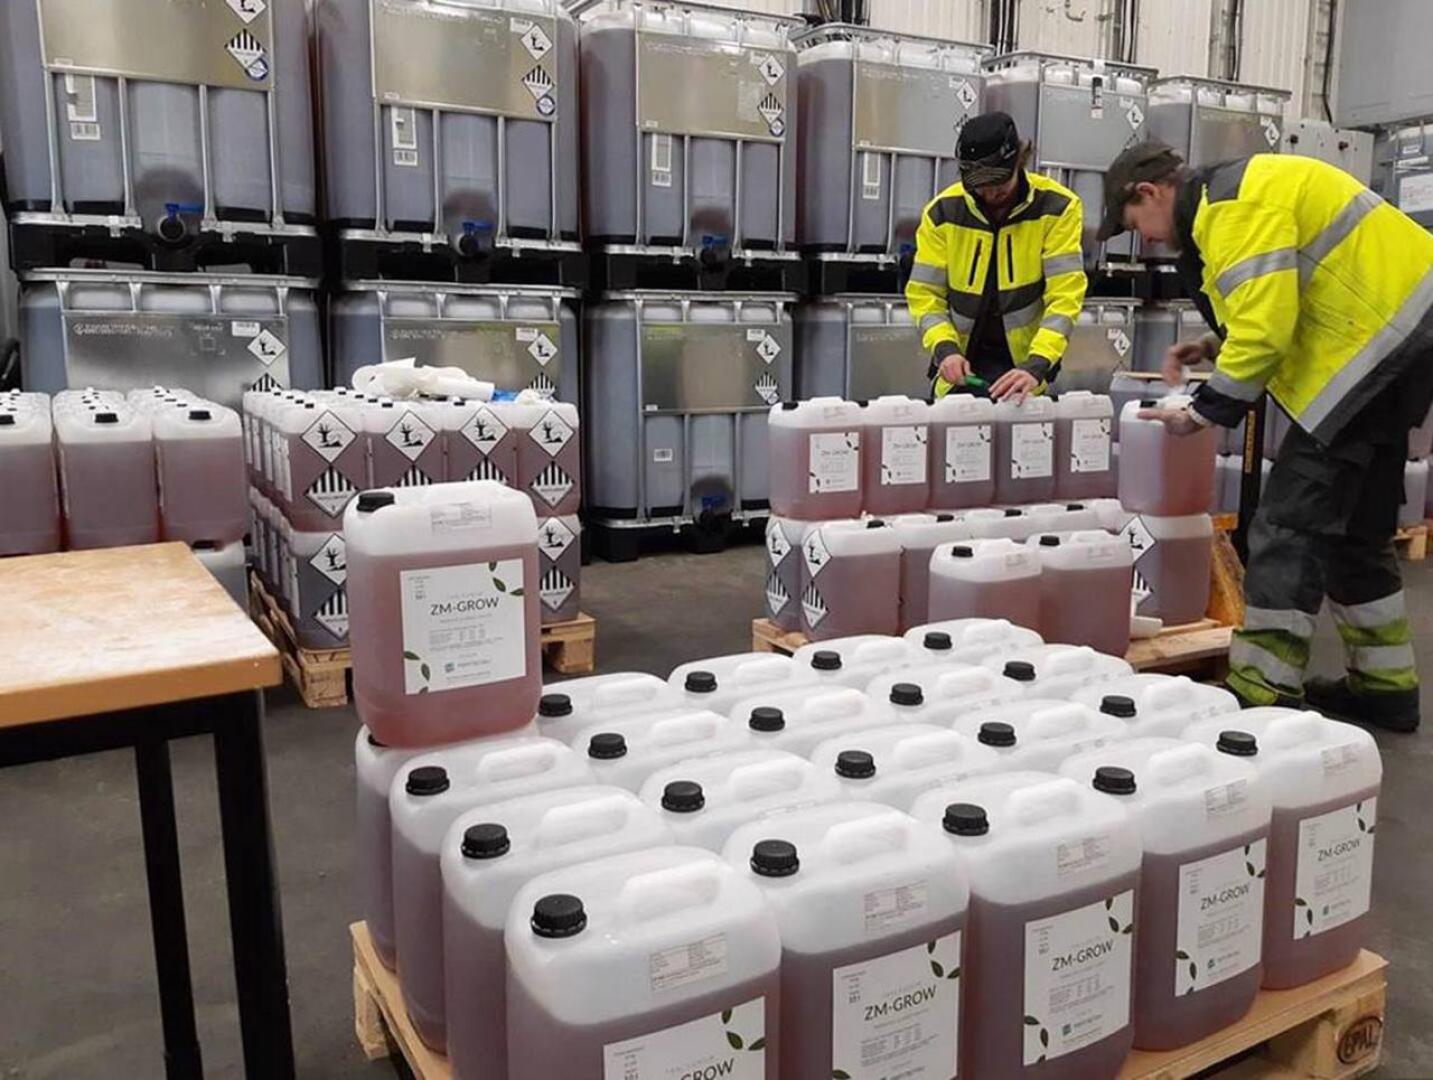 Tracegrown tehdas pystyy täyden kapasiteetin saavutettuaan prosessoimaan kaiken Suomesta kerättävän alkaliparistojätteen. 